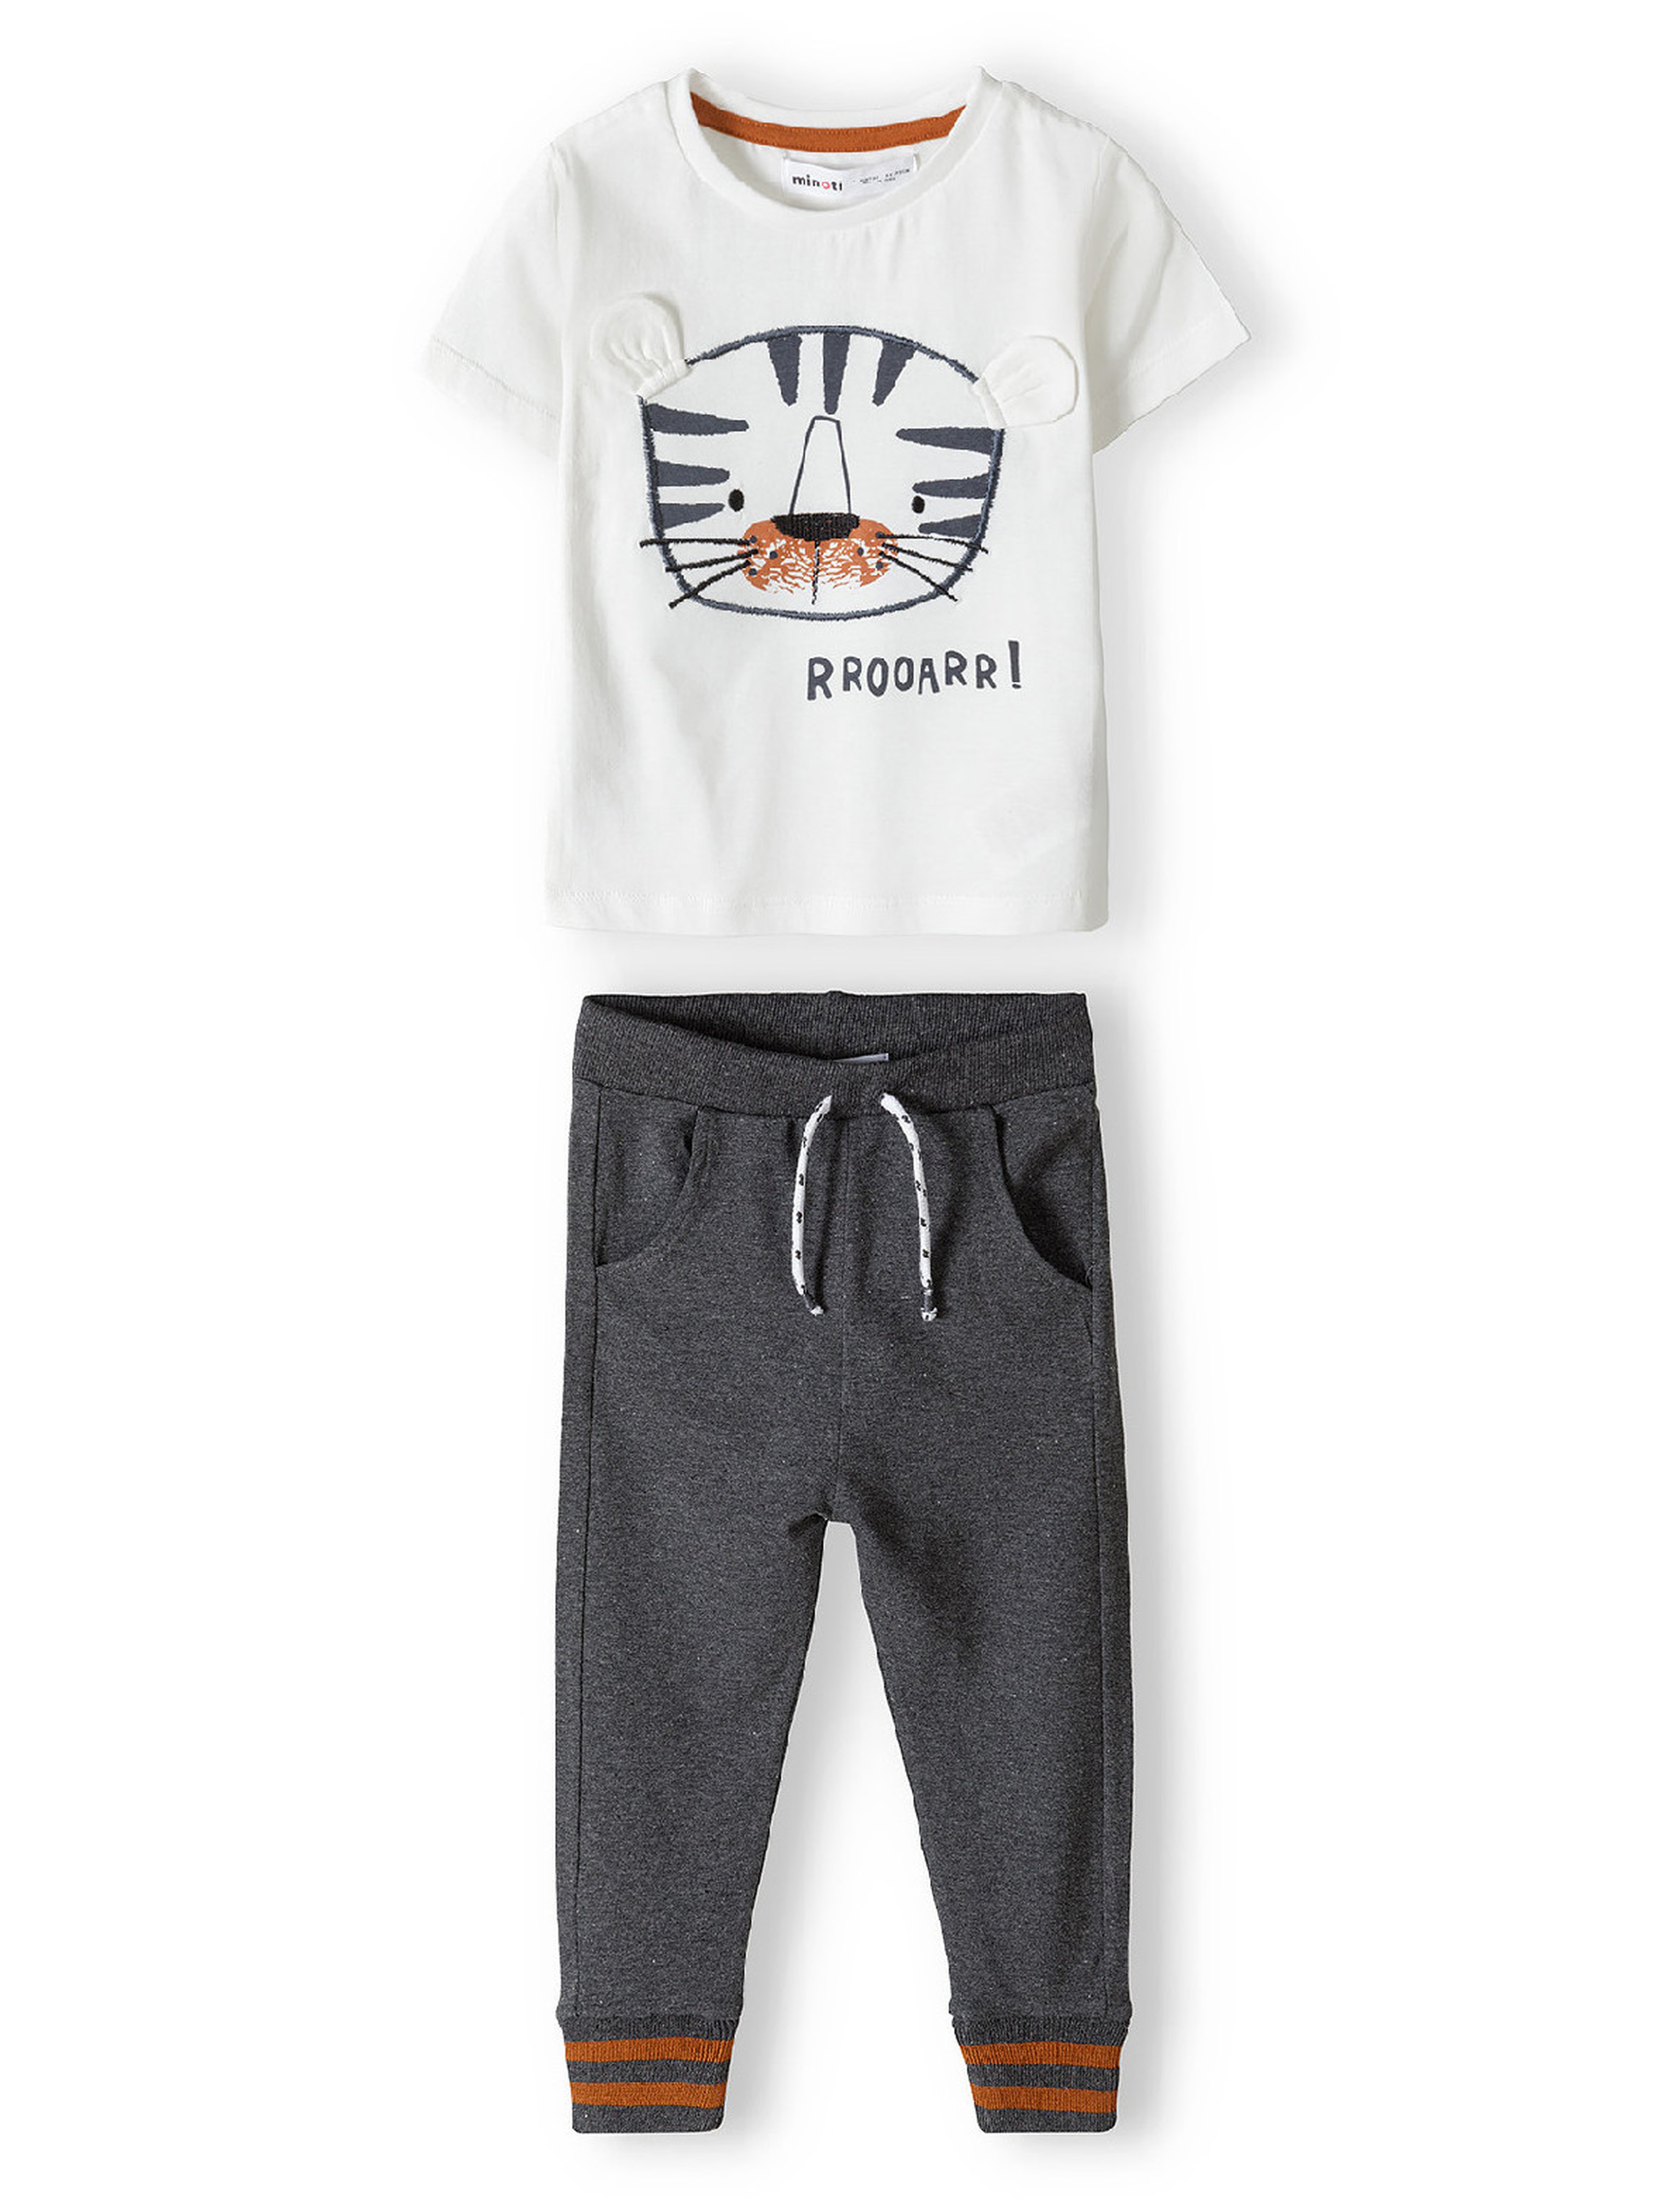 Komplet dla niemowlaka- biała koszulka z tygrysem + spodnie dresowe